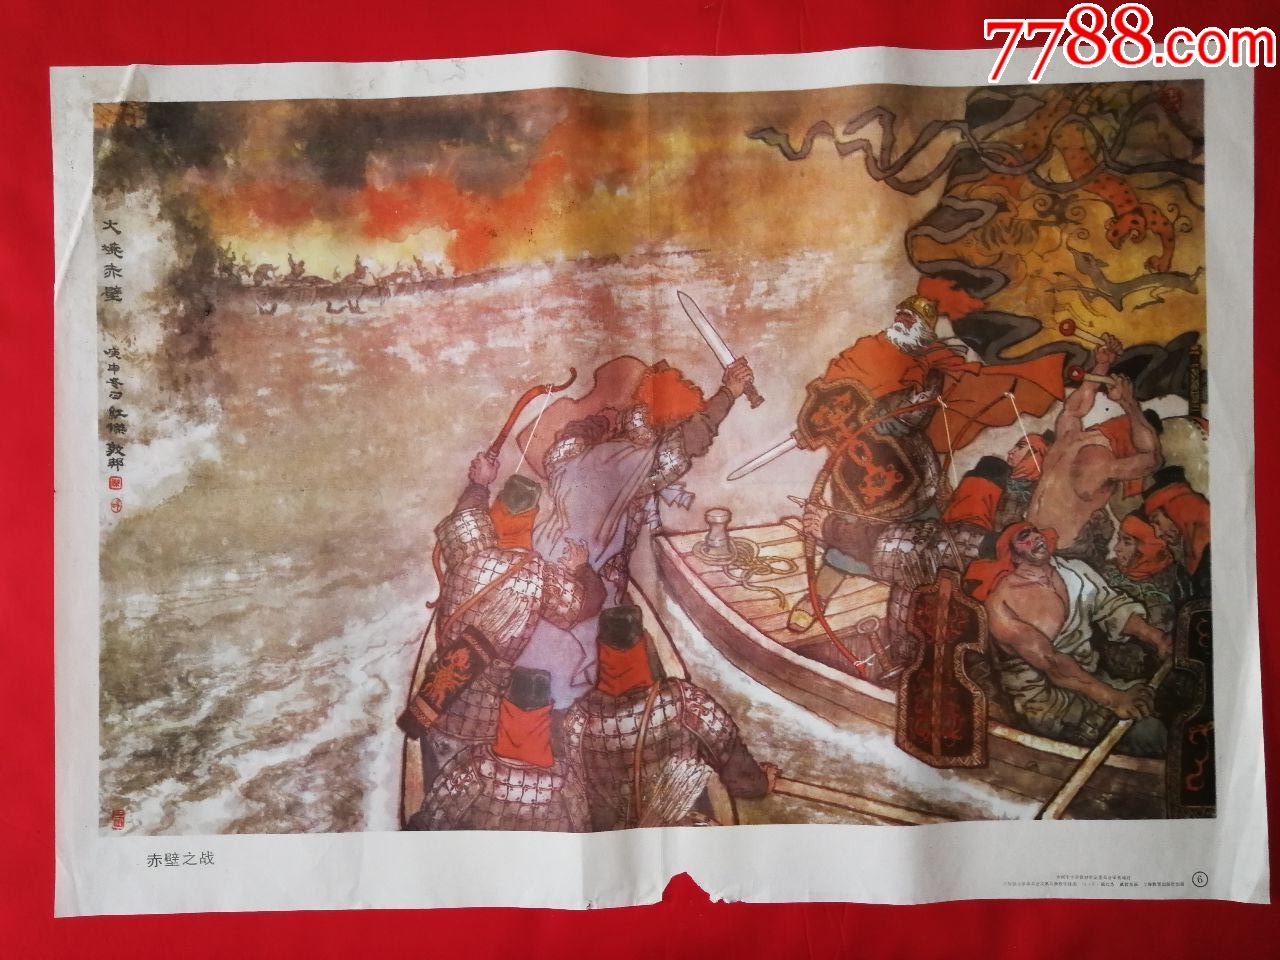 赤壁之战壁画案图片